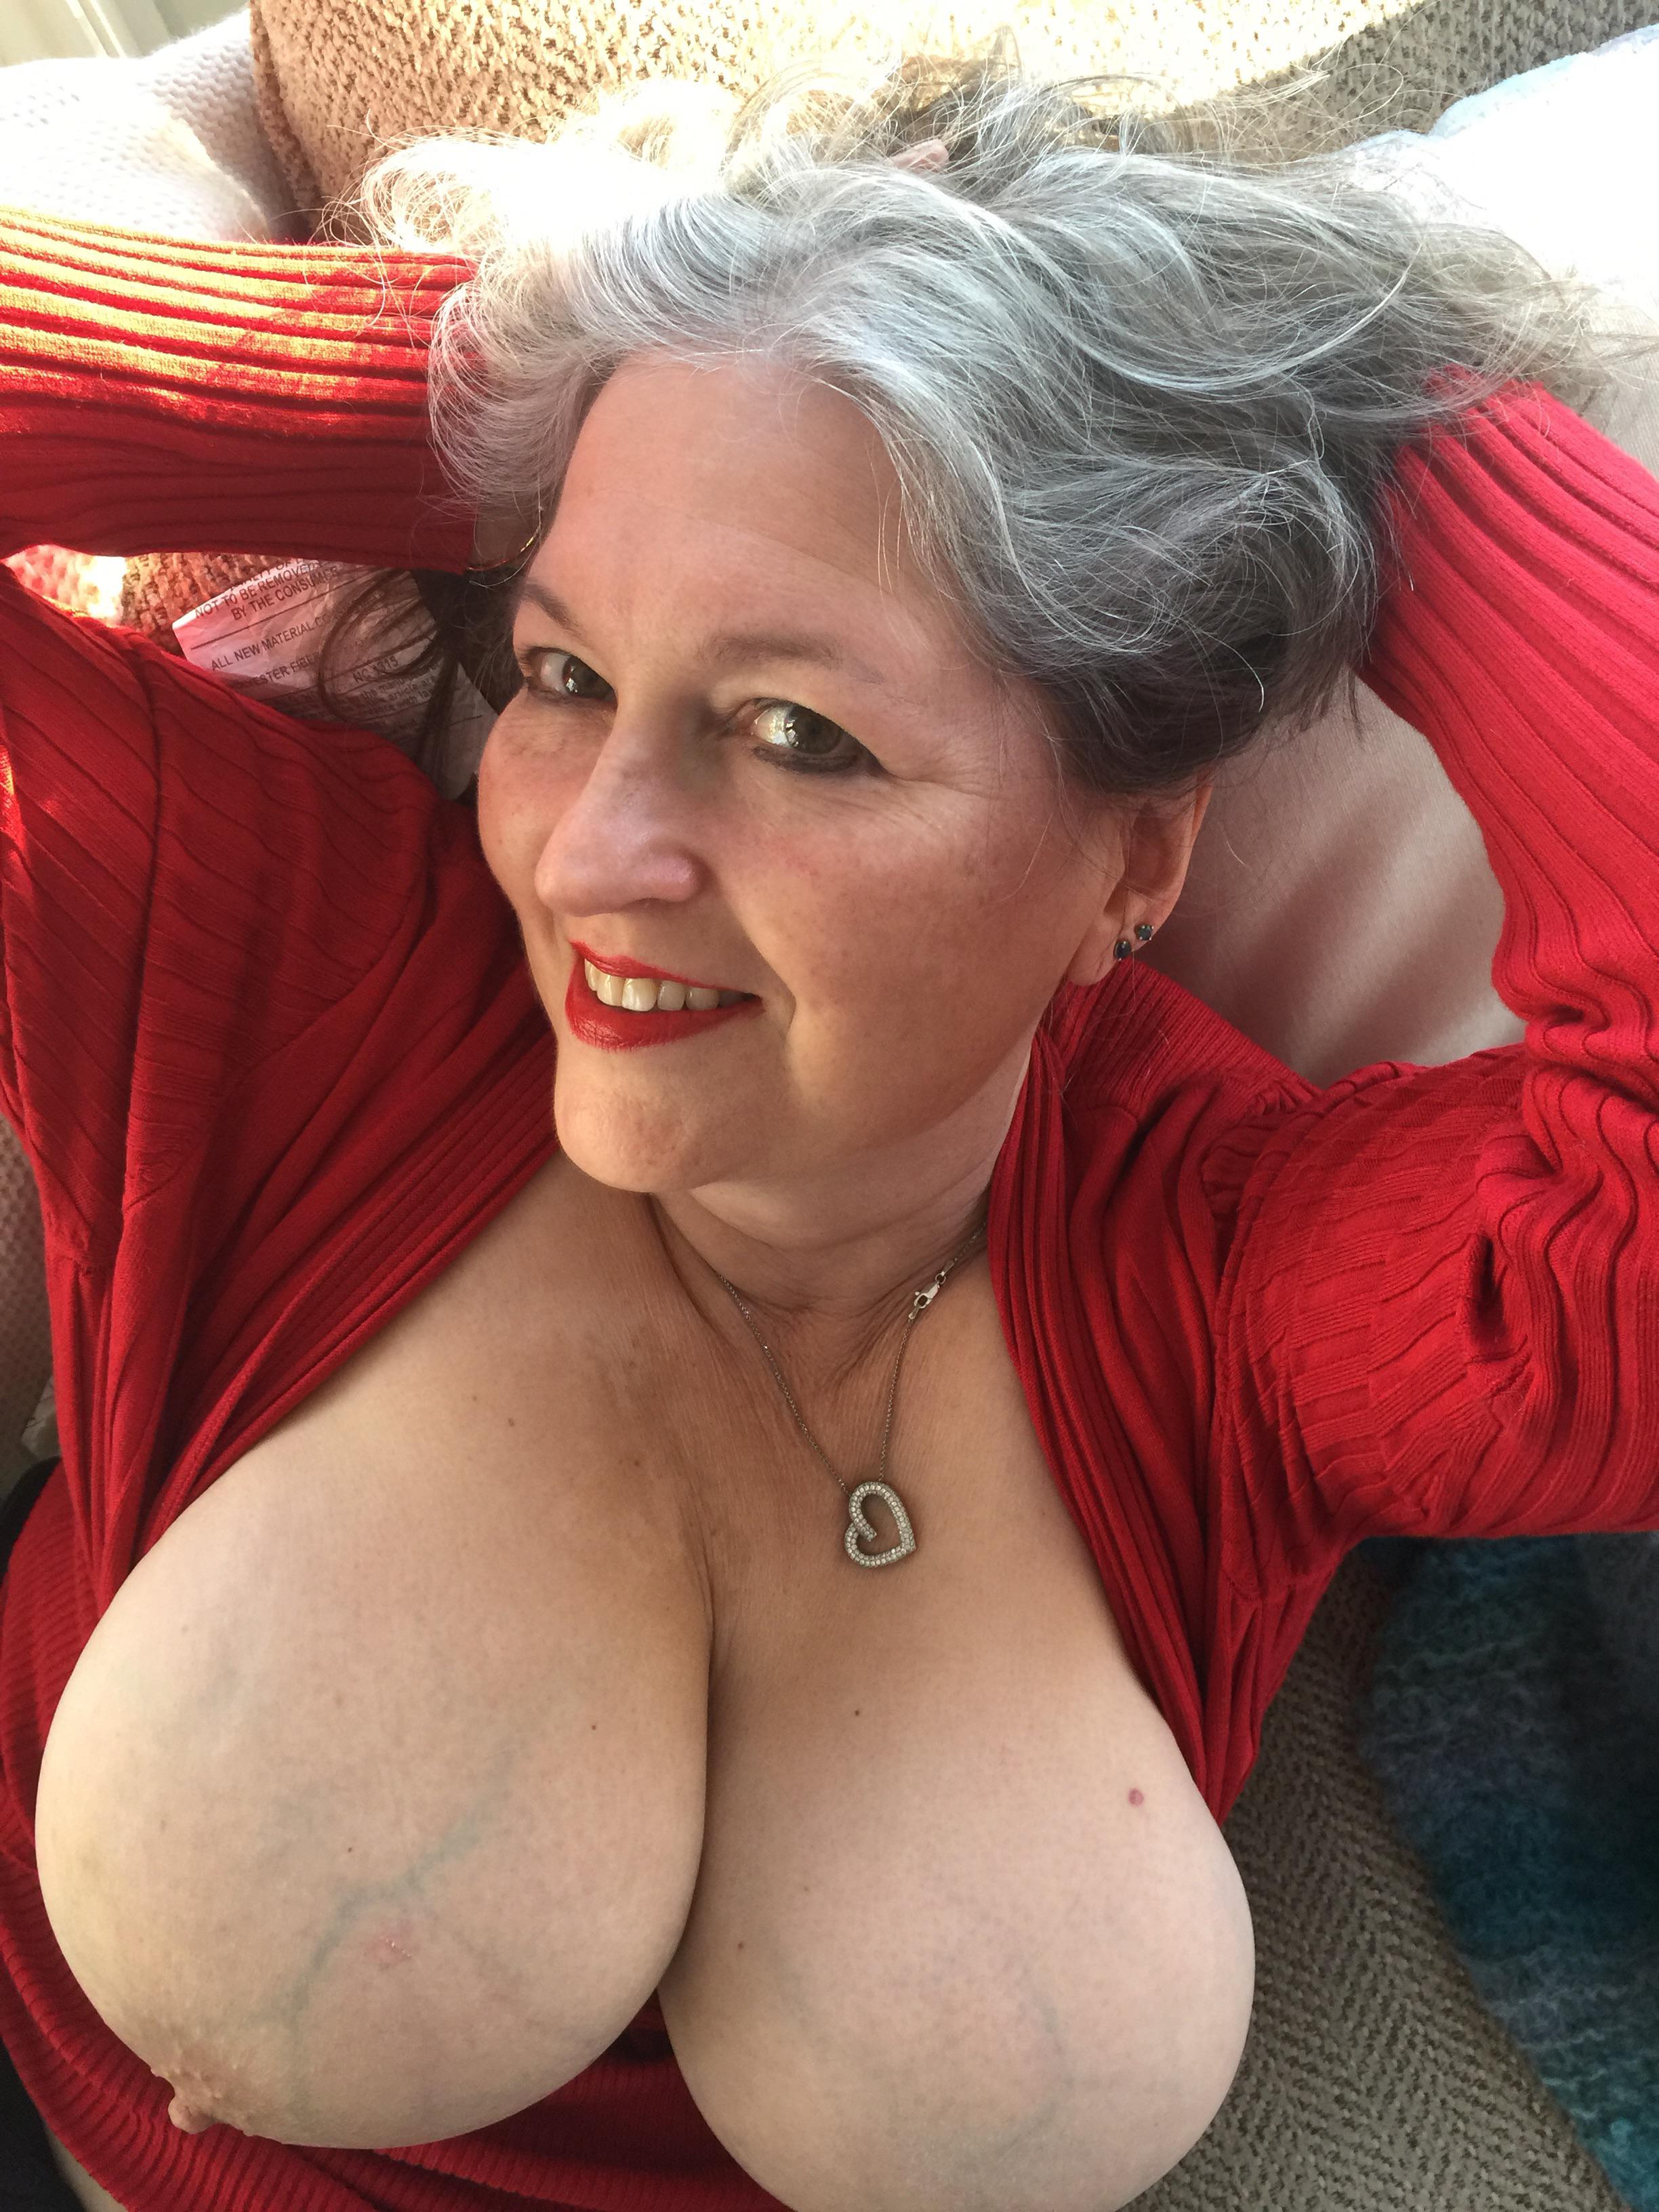 Meine heiße Gilf-Frau (62)!Wer wird ihren Oma-Titten Tribut zollen? Foto Foto